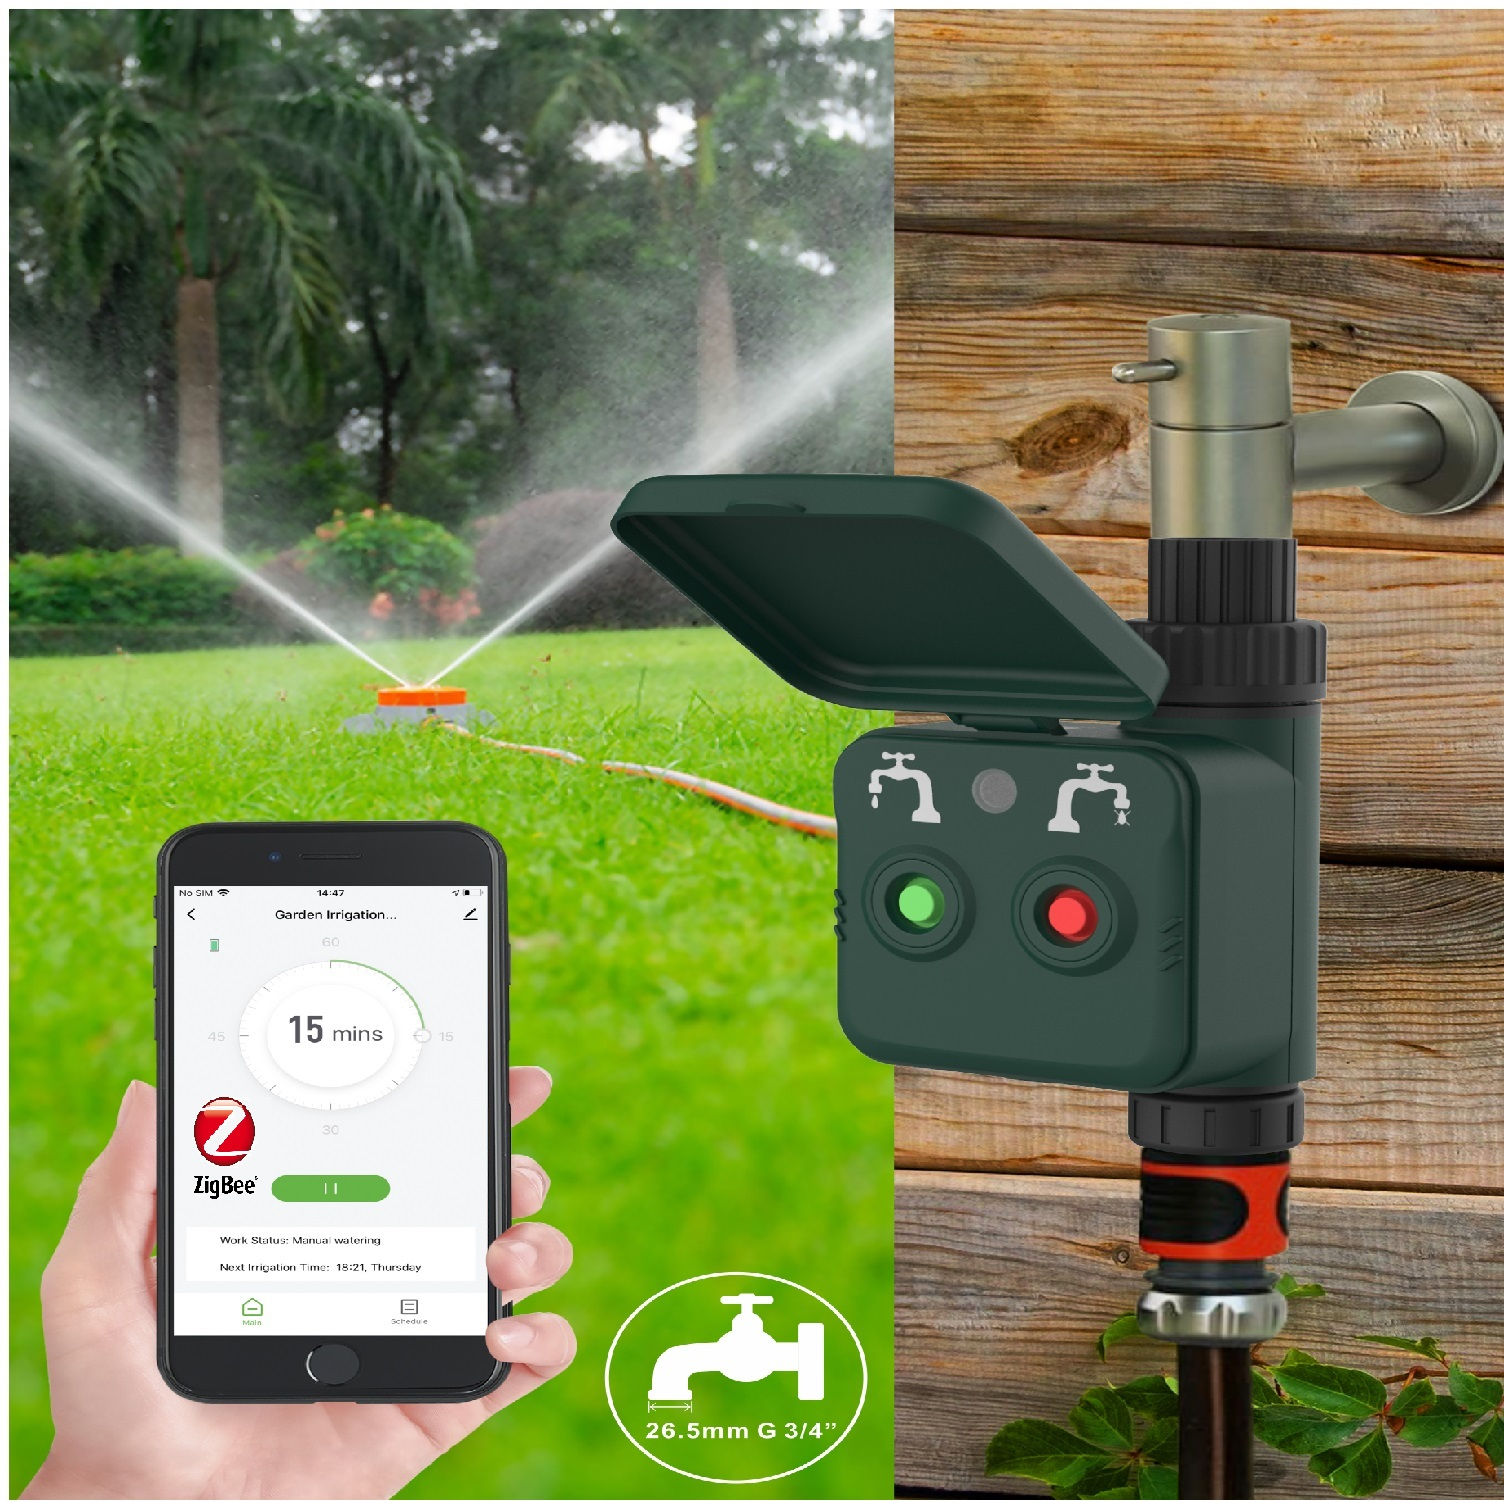 NC Gartenbewässerung Steuerung Intelligente Intelligente Steuerung der Gartenbewässerung R7060 der WOOX R7060